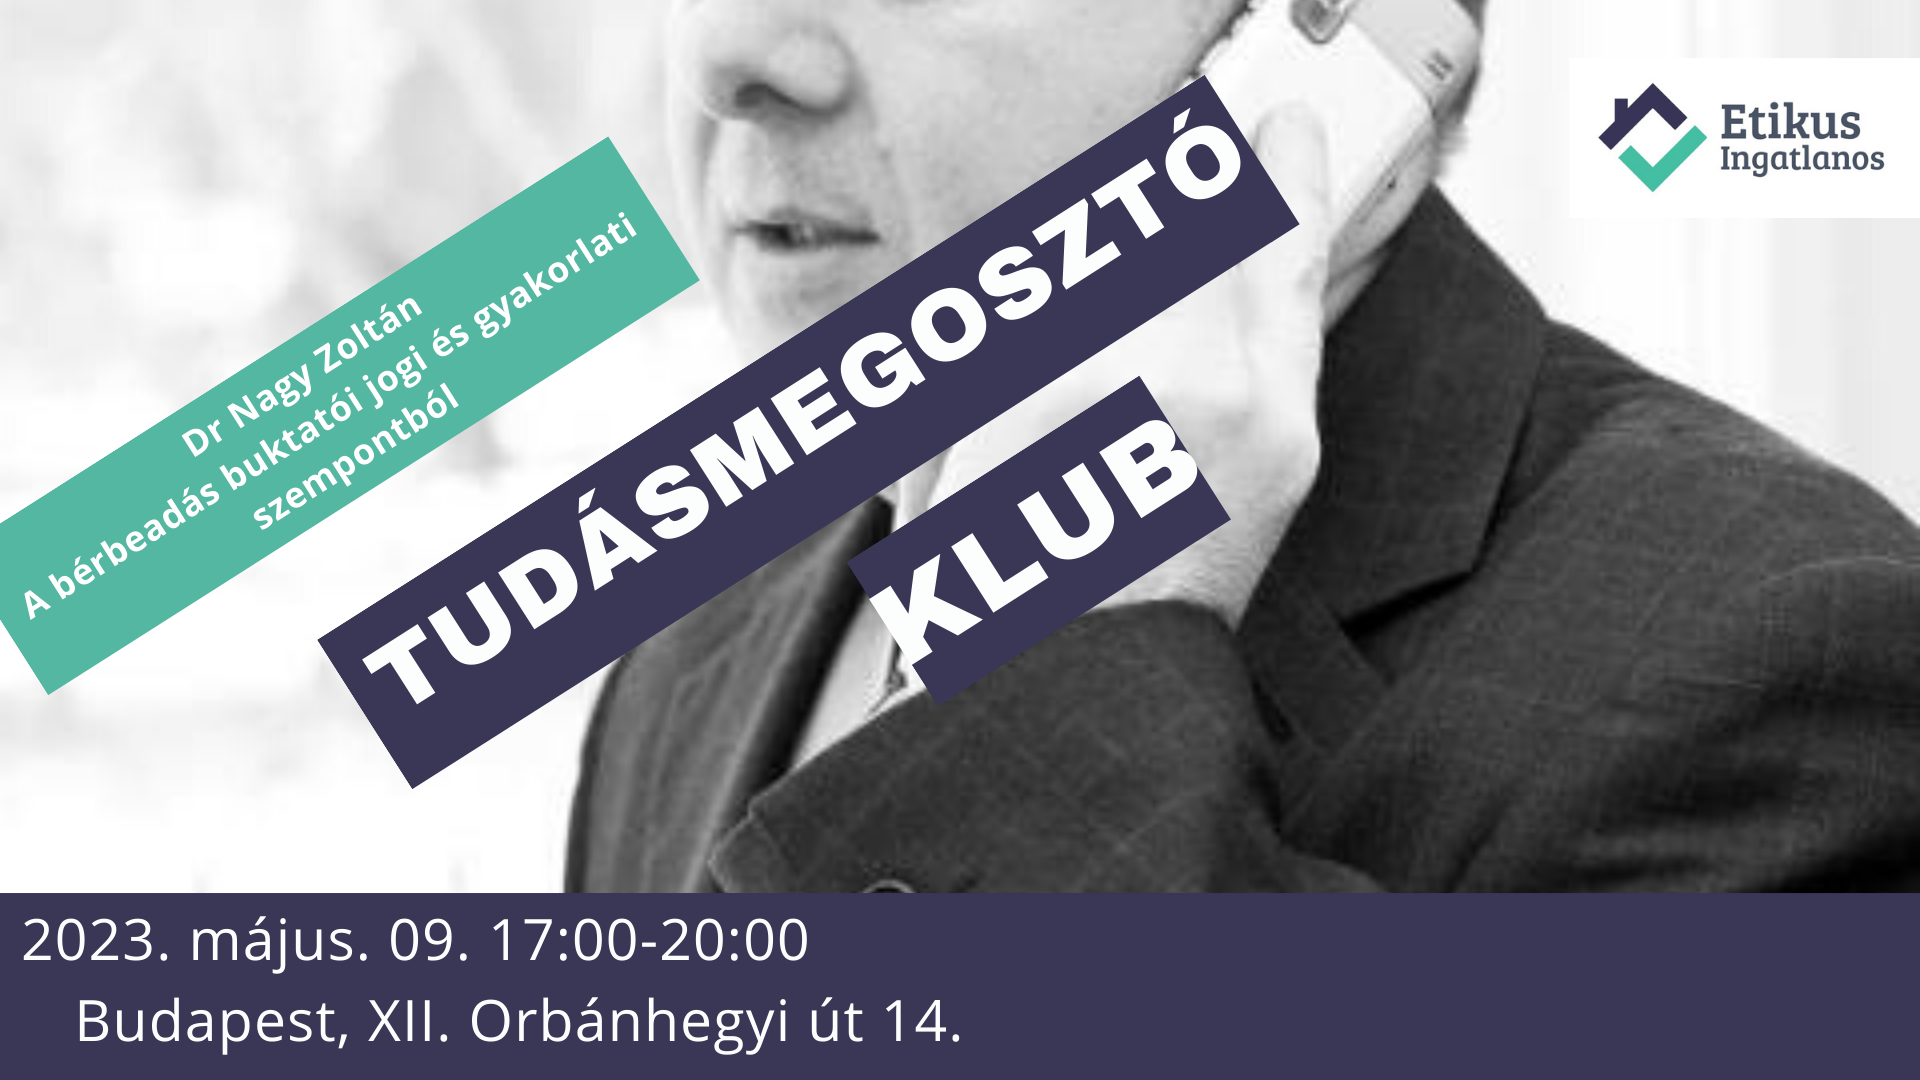 You are currently viewing Zárt körű rendezvény: Etikus Ingatlanos Tudásmegosztó Klub 2023.05.09